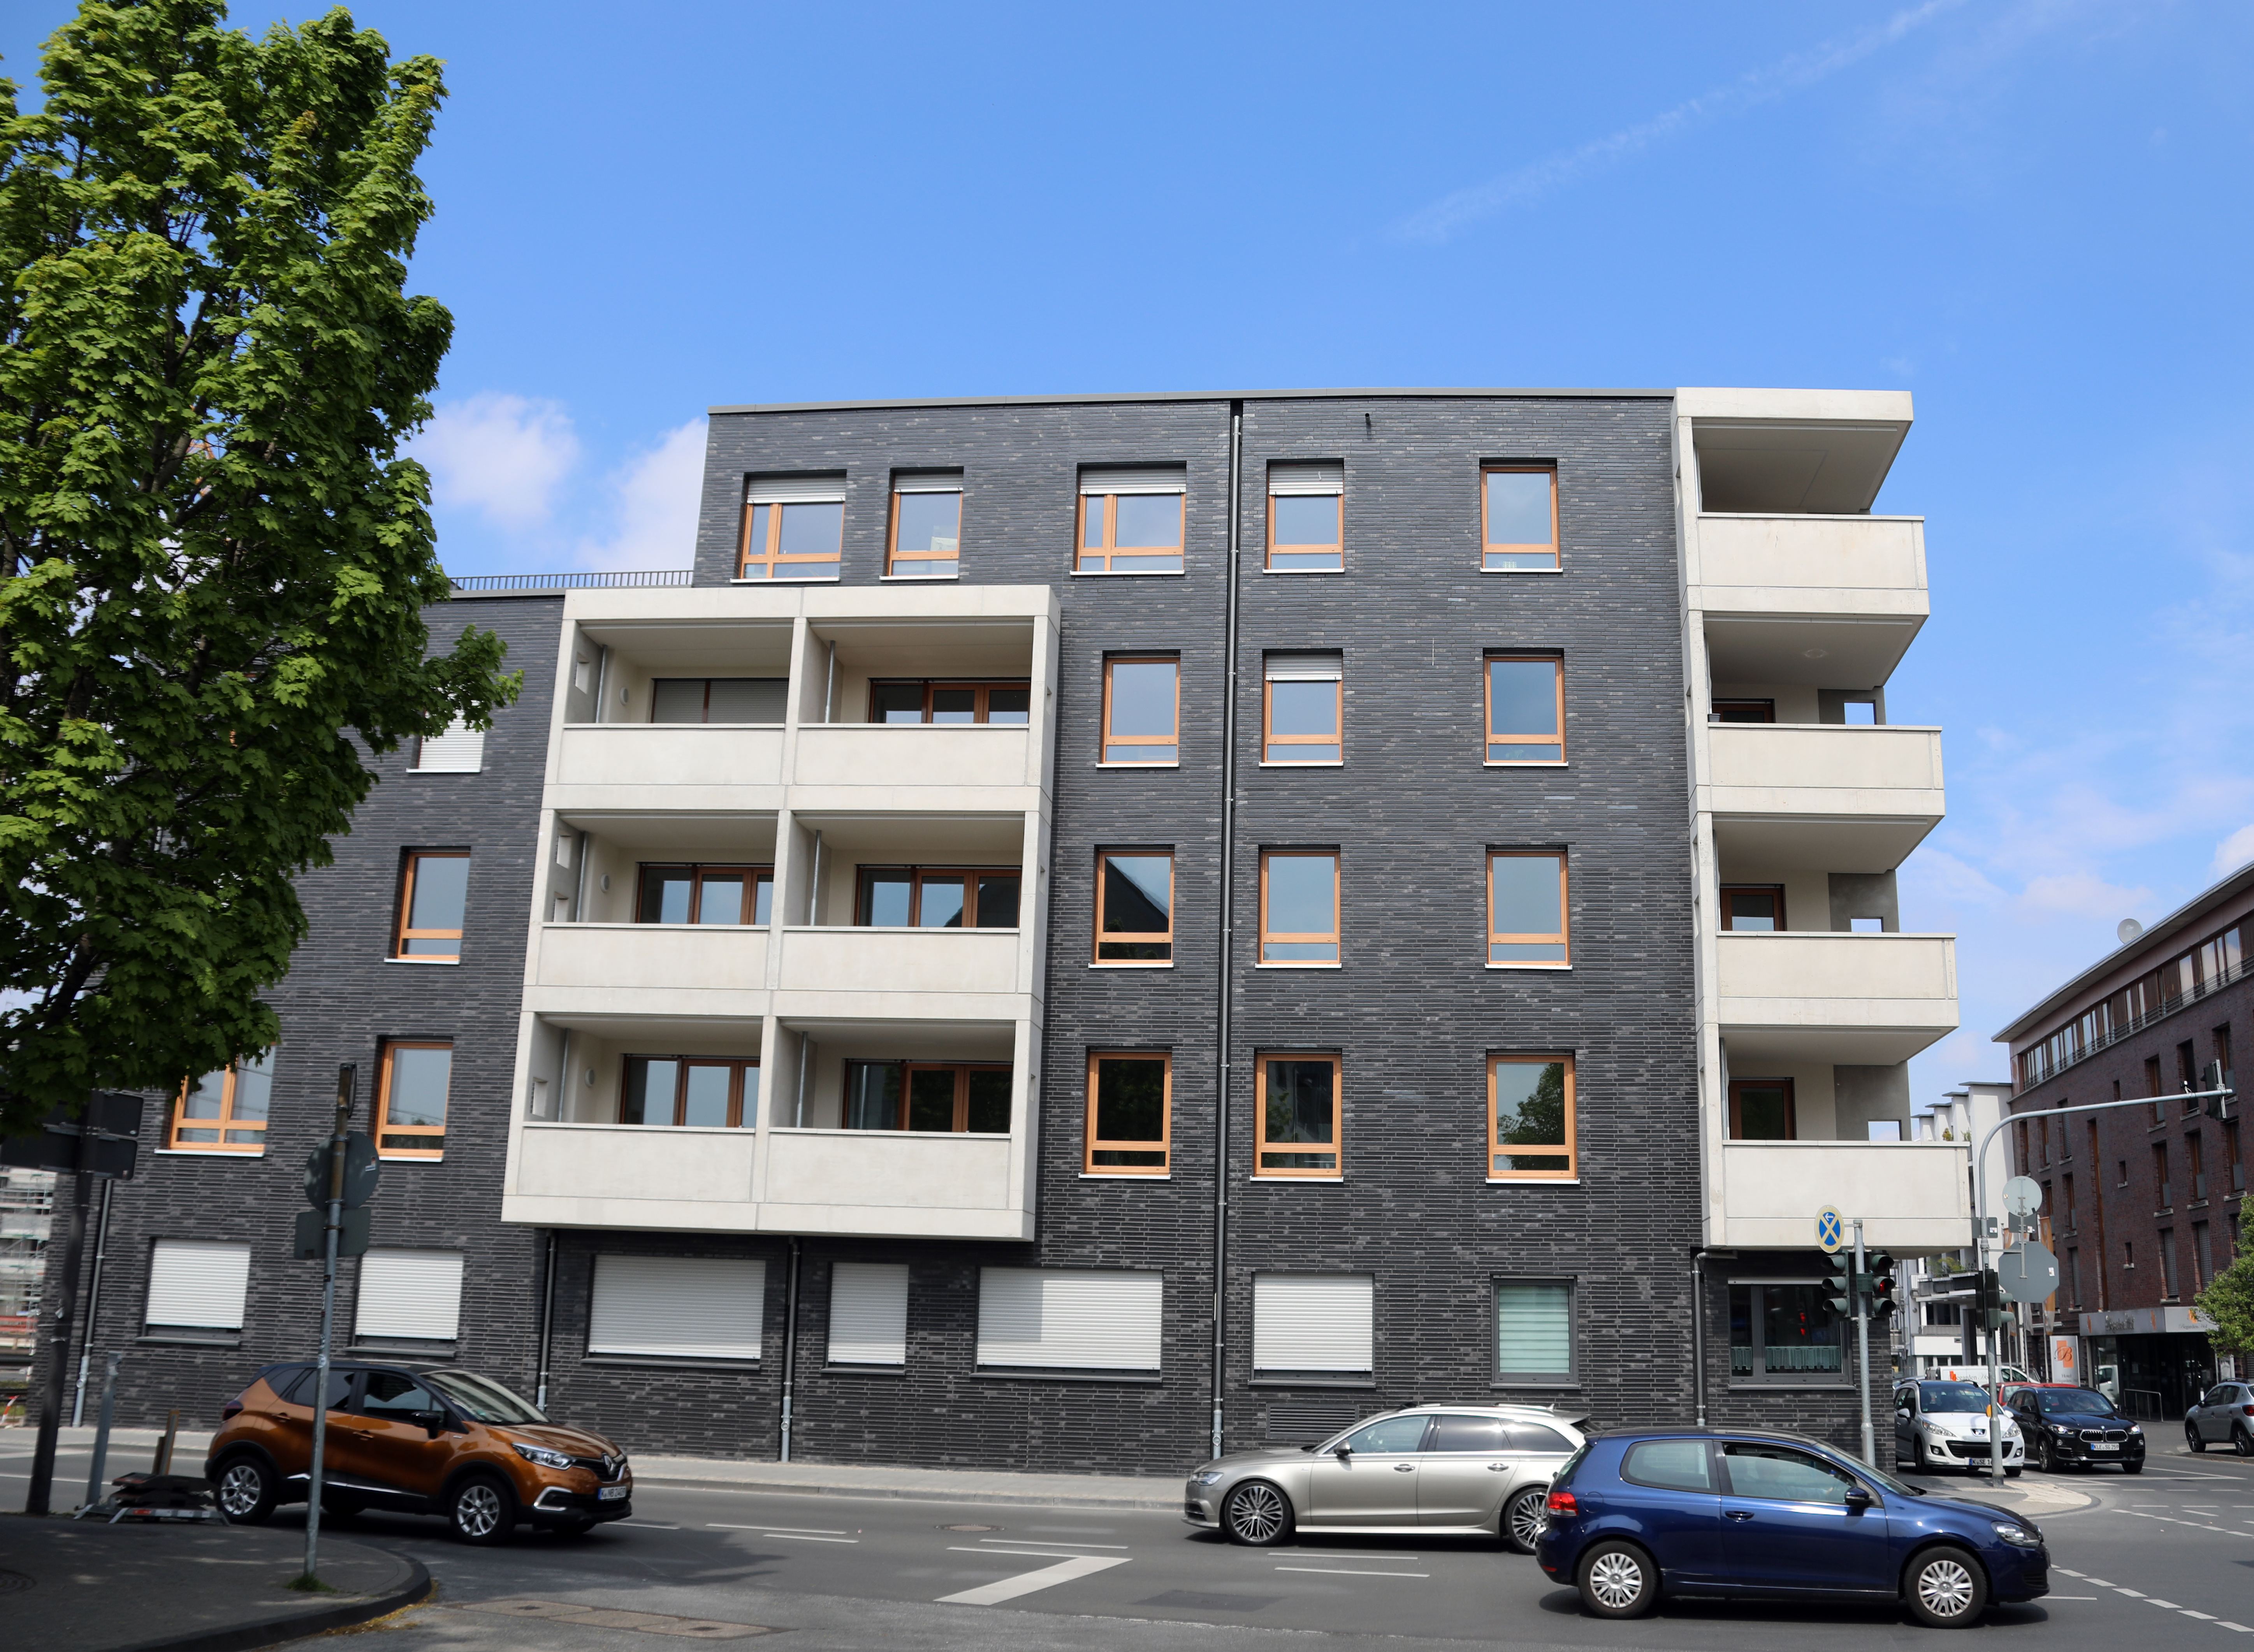 Neues Wohnhaus in der Brückenstraße 112 mit Balkonen
				